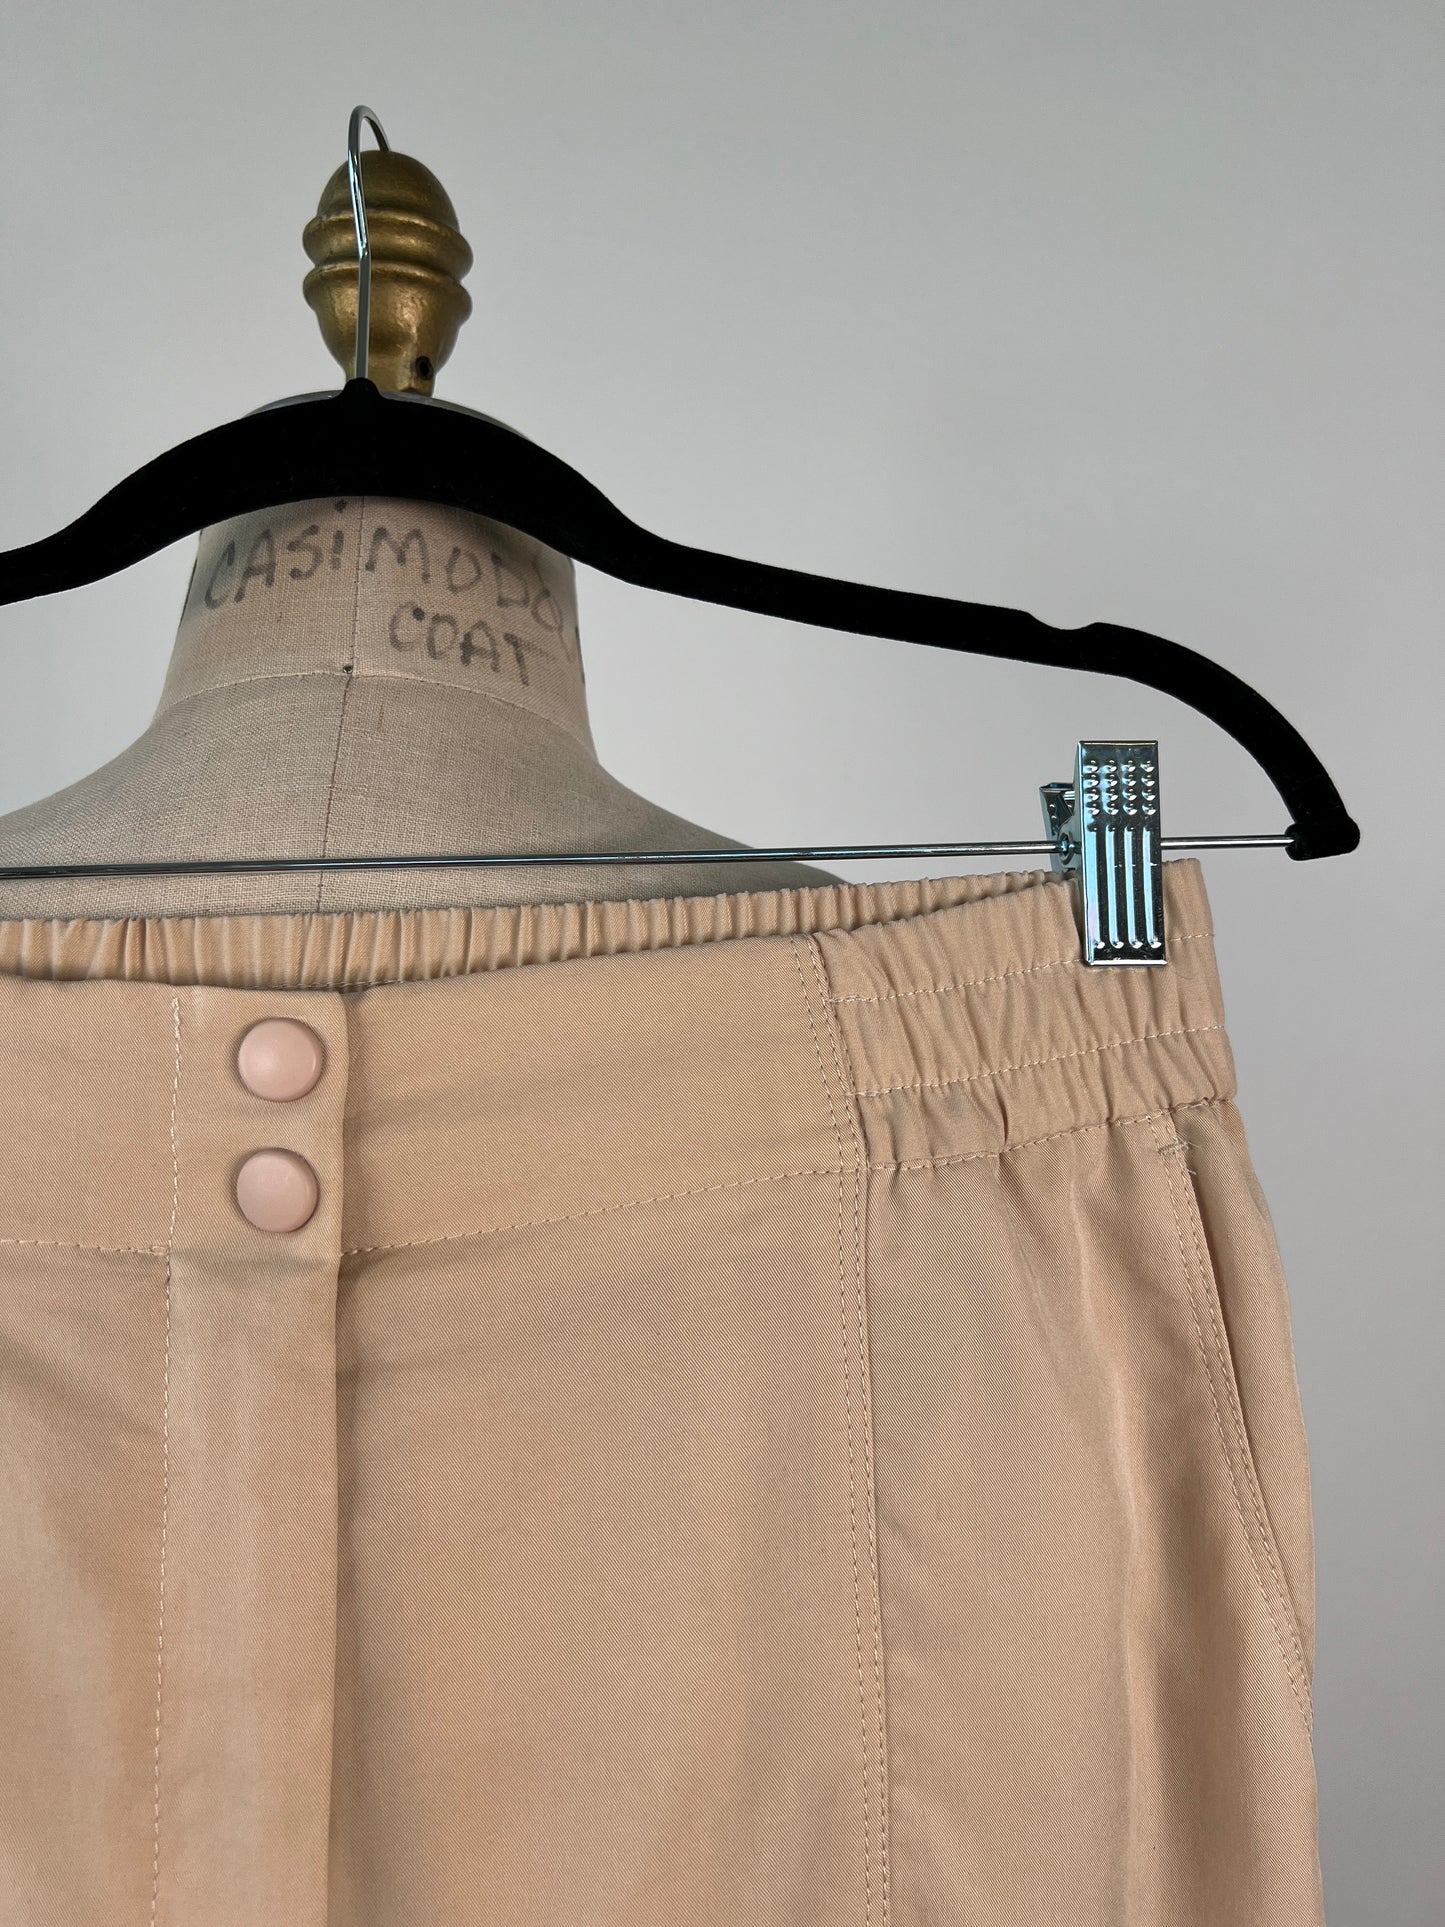 Pantalon en lyocell beige à ourlet ajustable (S à T+)